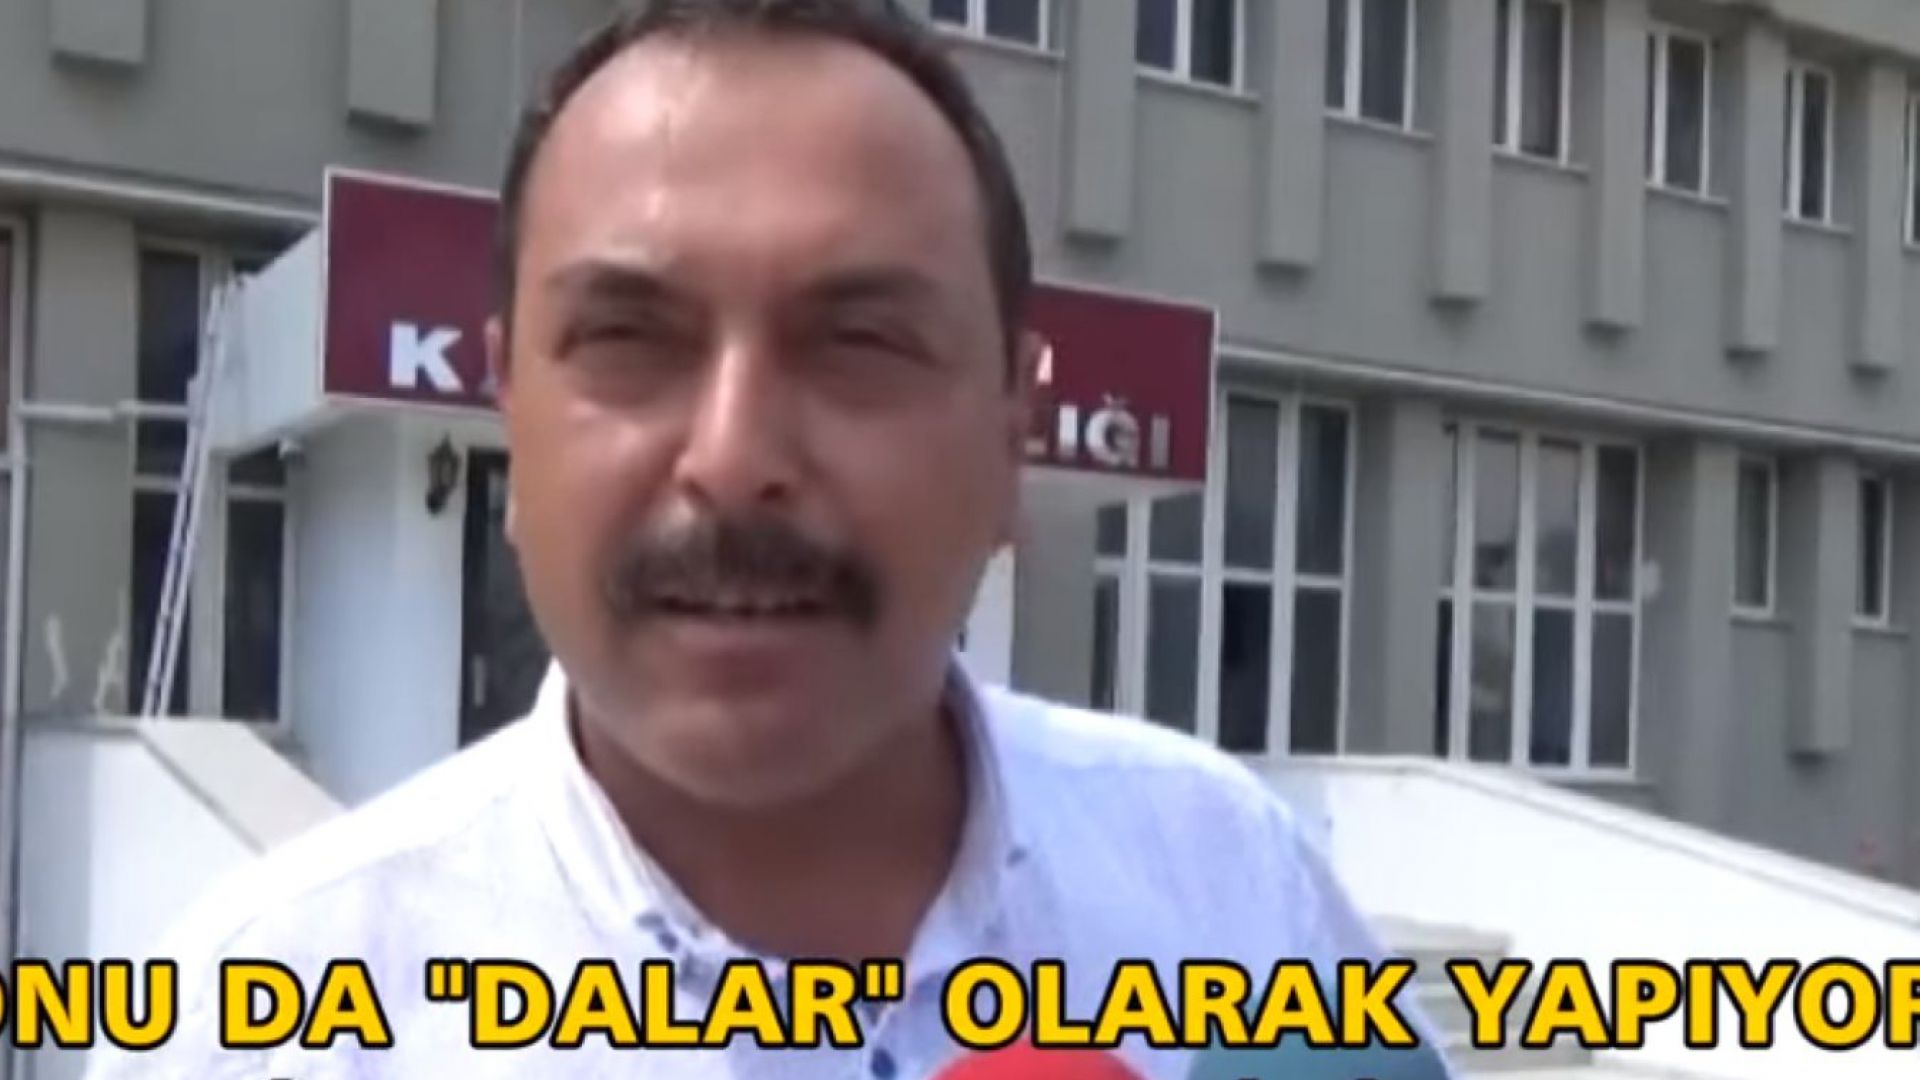 Турчинът Ферхат Долар помоли местните власти в егейския окръг Мугла